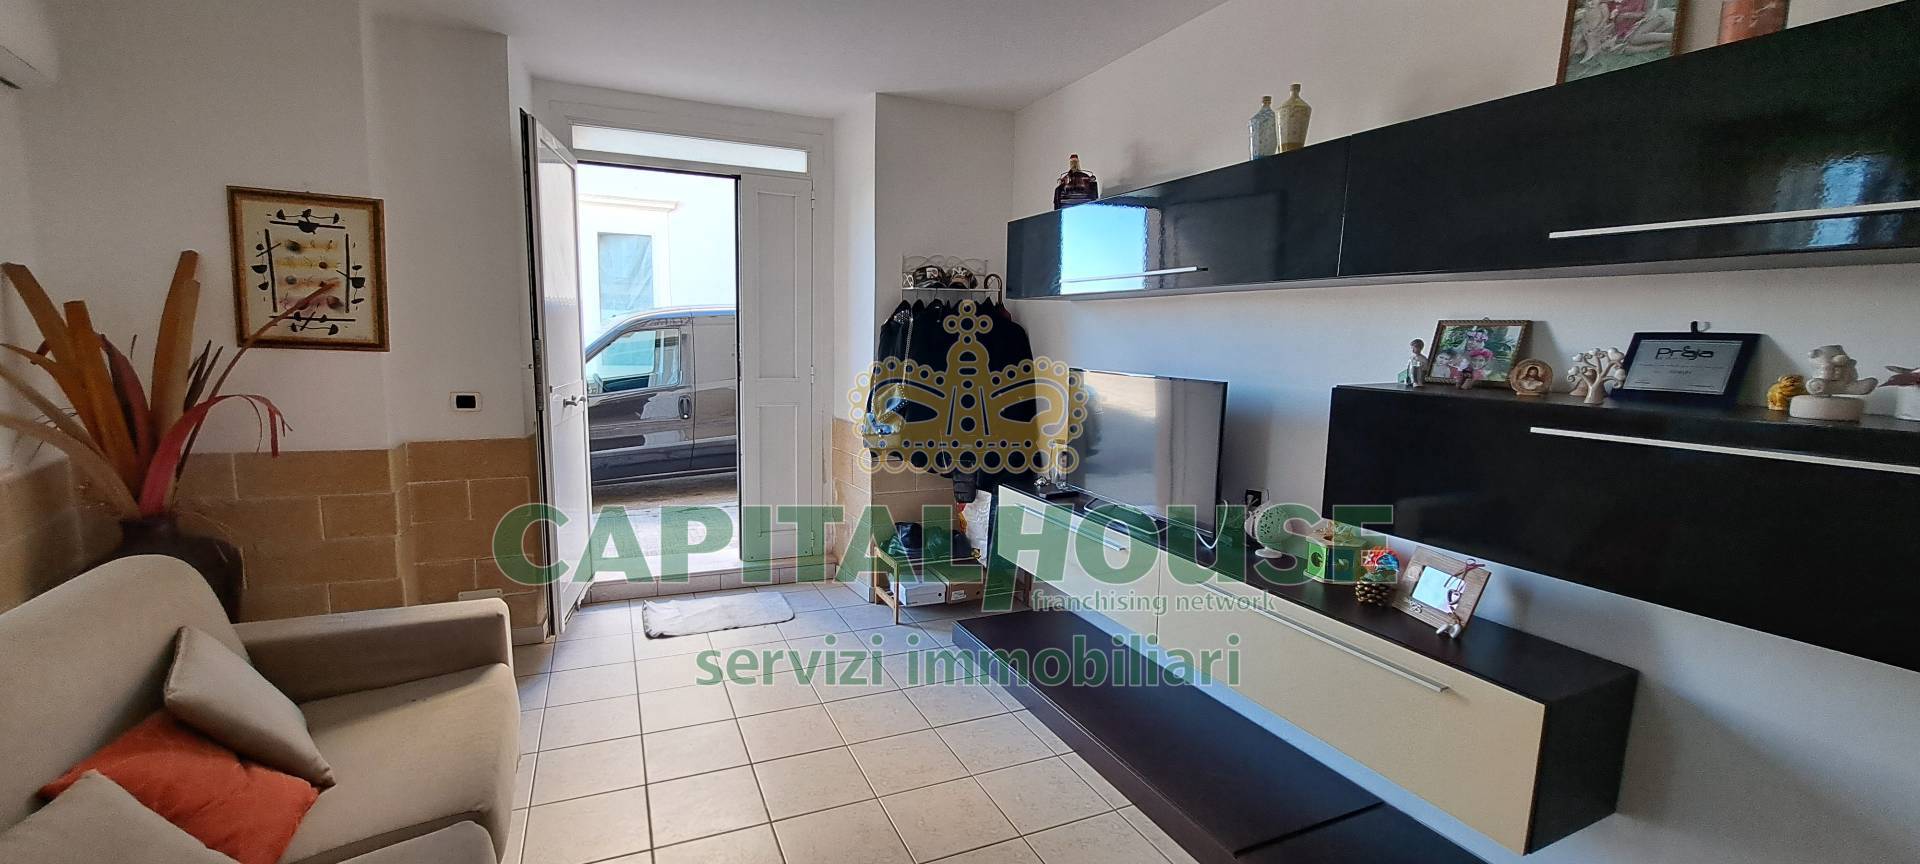 Appartamento in vendita a Gallipoli, 2 locali, zona Località: Centro, prezzo € 130.000 | PortaleAgenzieImmobiliari.it